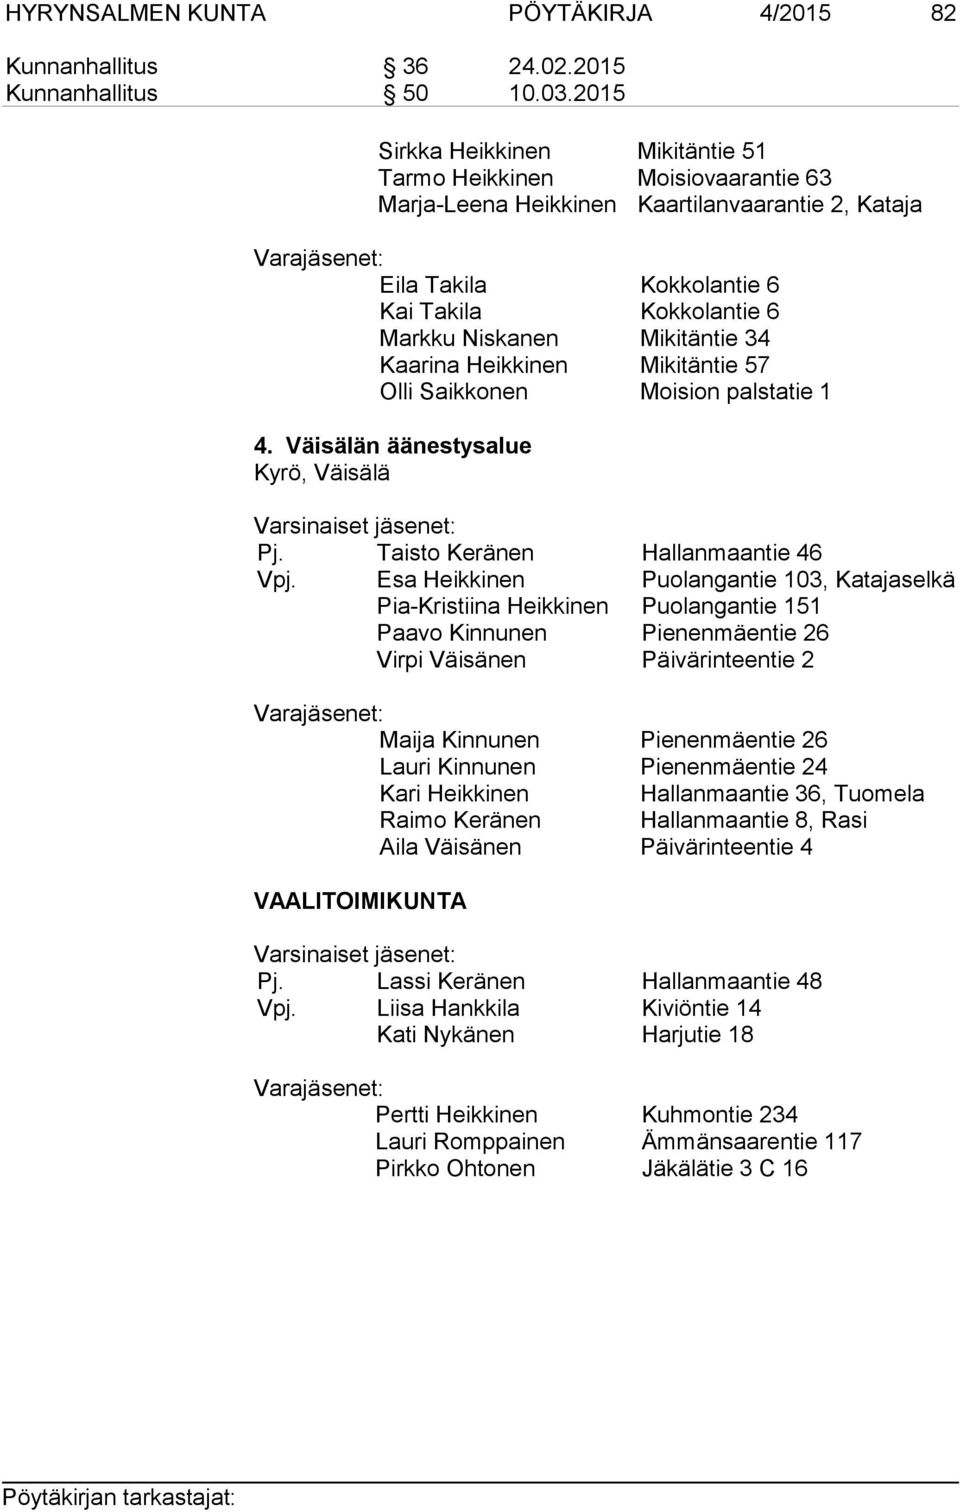 Niskanen Mikitäntie 34 Kaarina Heikkinen Mikitäntie 57 Olli Saikkonen Moision palstatie 1 4. Väisälän äänestysalue Kyrö, Väisälä Varsinaiset jäsenet: Pj. Taisto Keränen Hallanmaantie 46 Vpj.